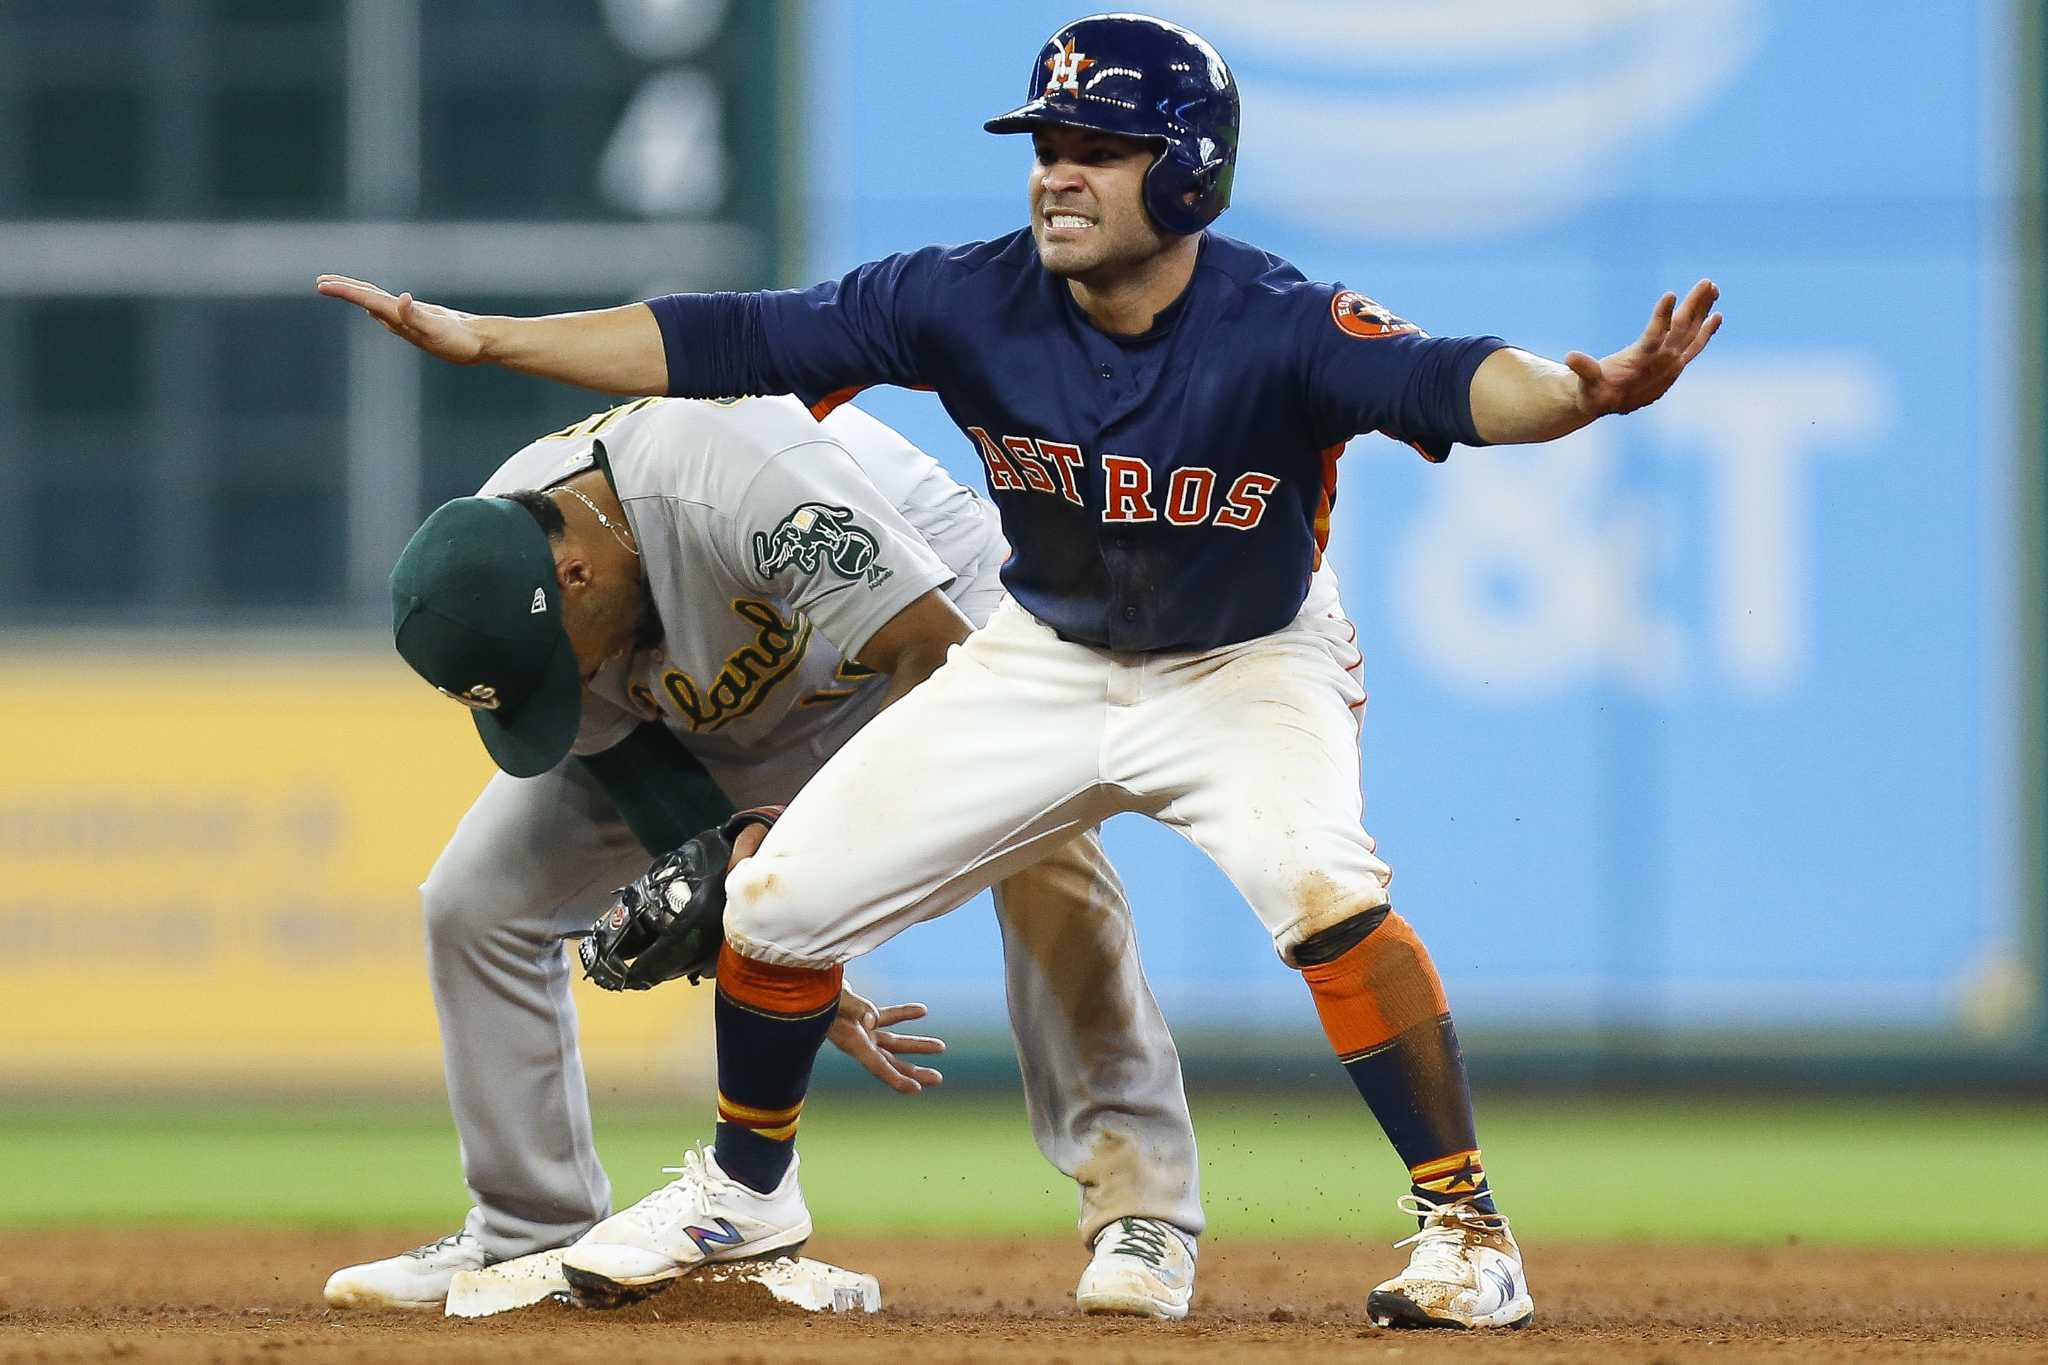 Jose Altuve looks to extend Astros' postseason success